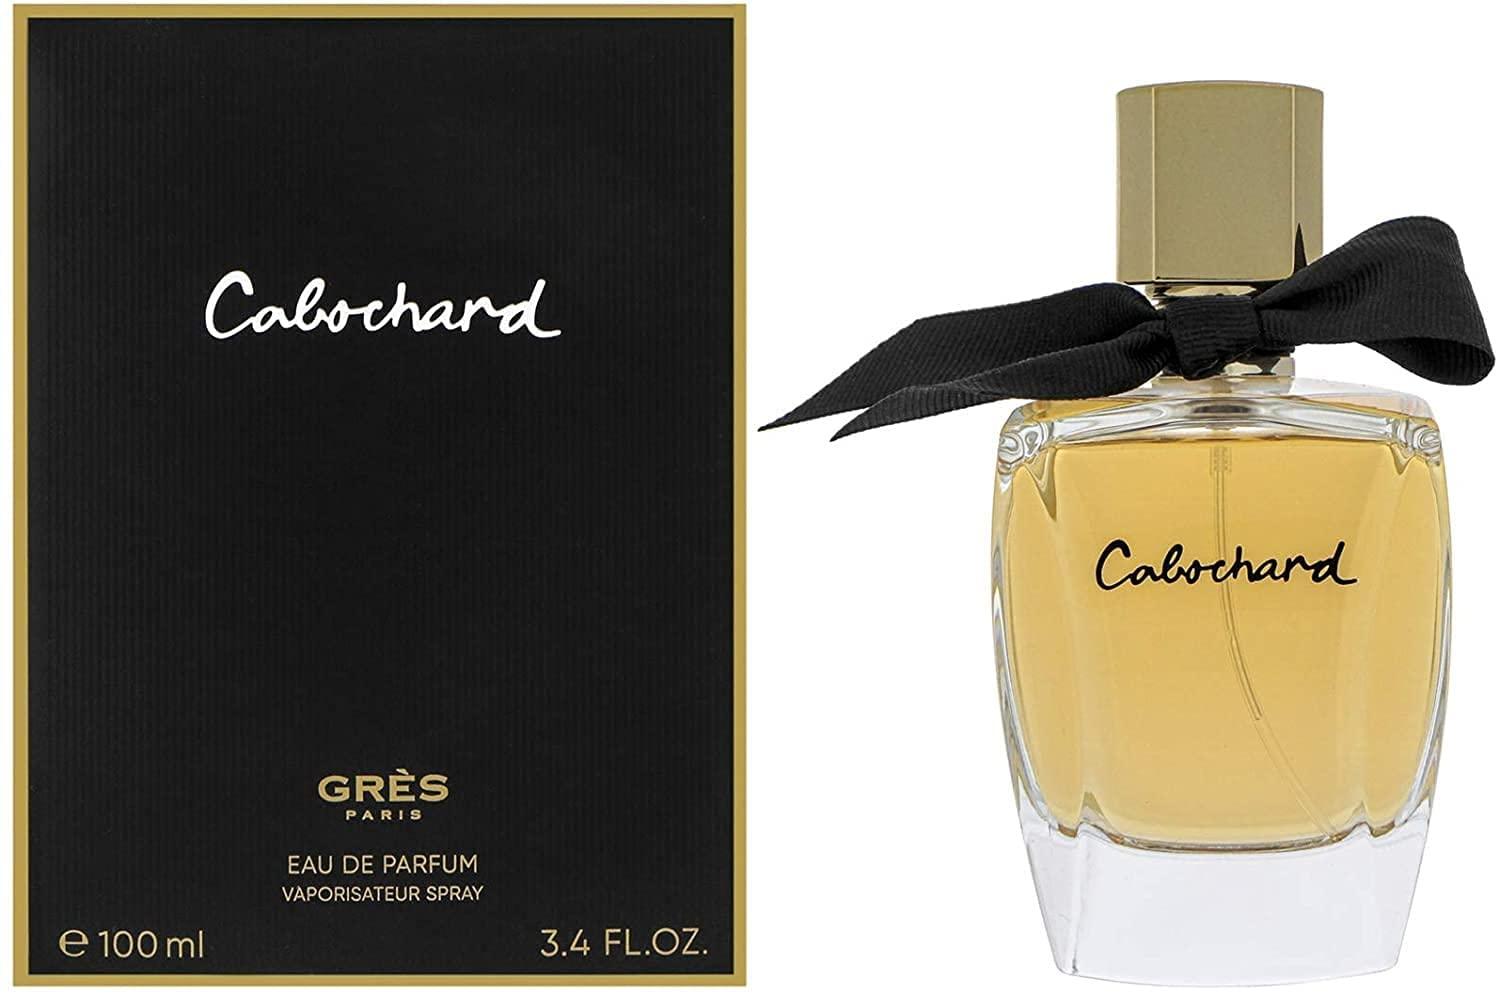 Cabochard - Parfum Gallerie